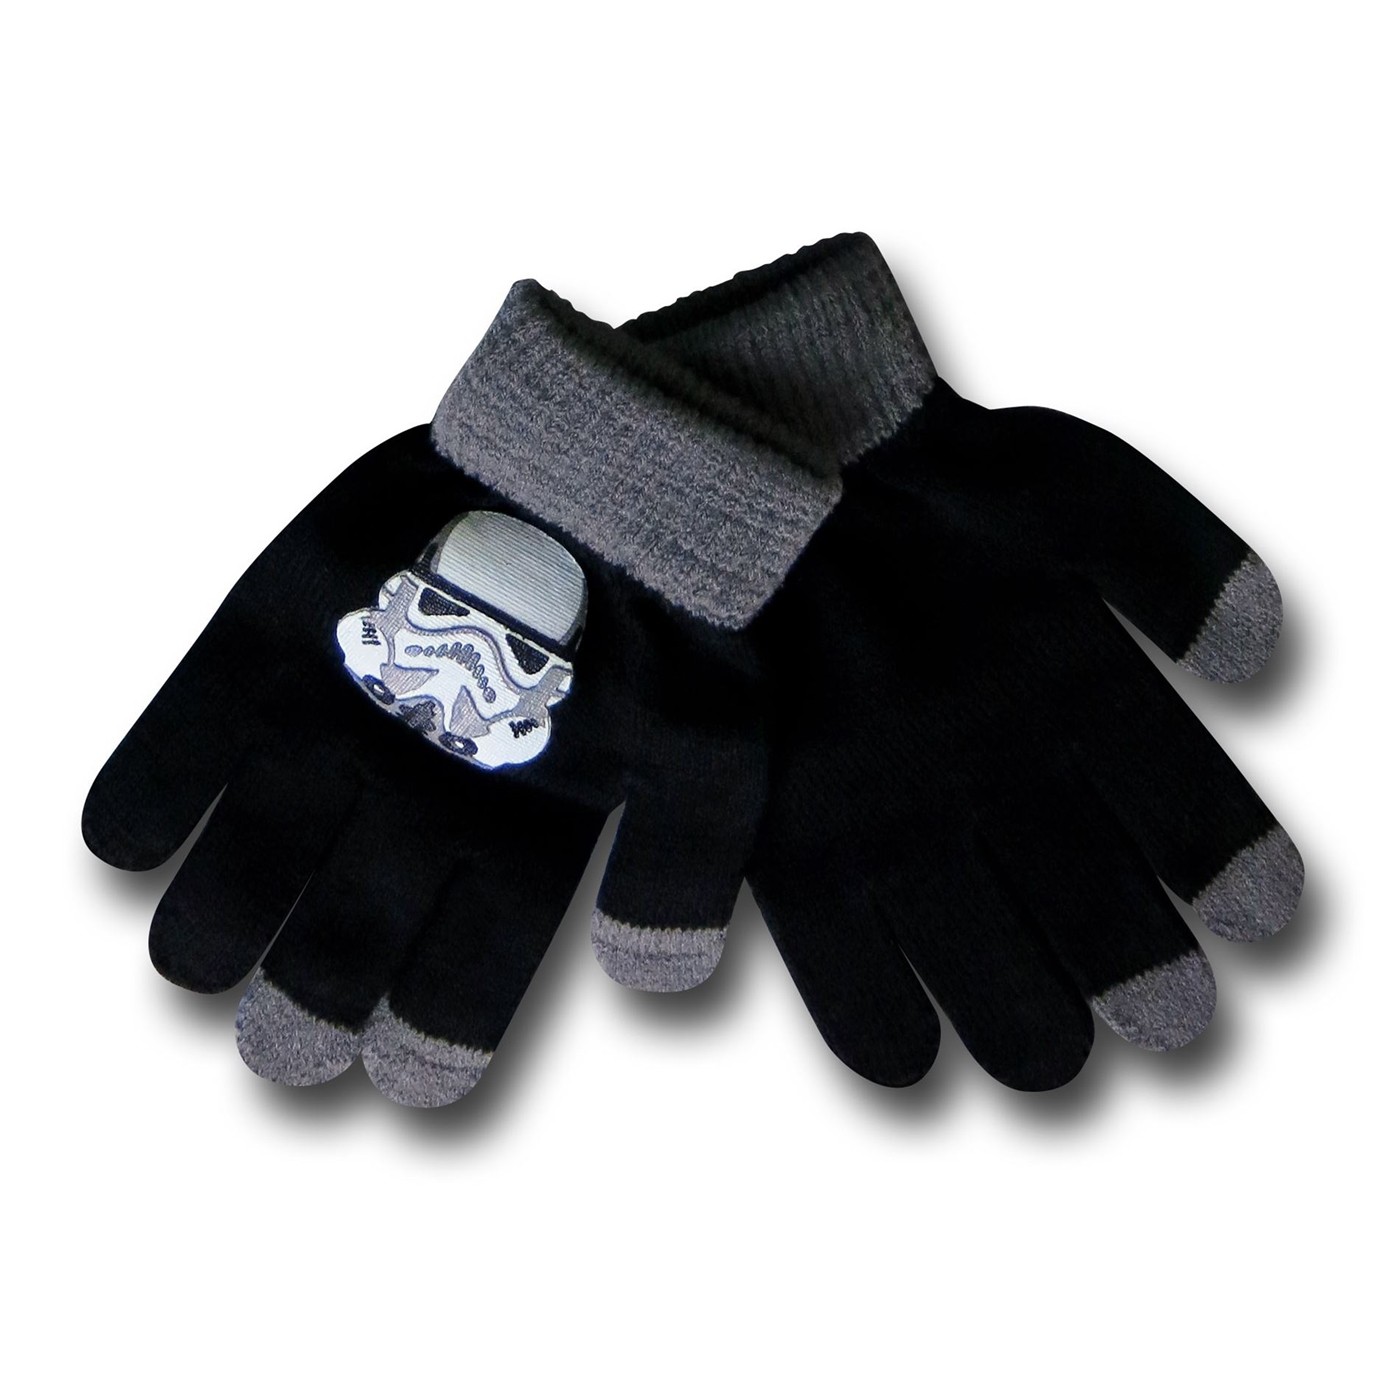 Star Wars Stormtrooper Kids Knit Beanie & Glove Set